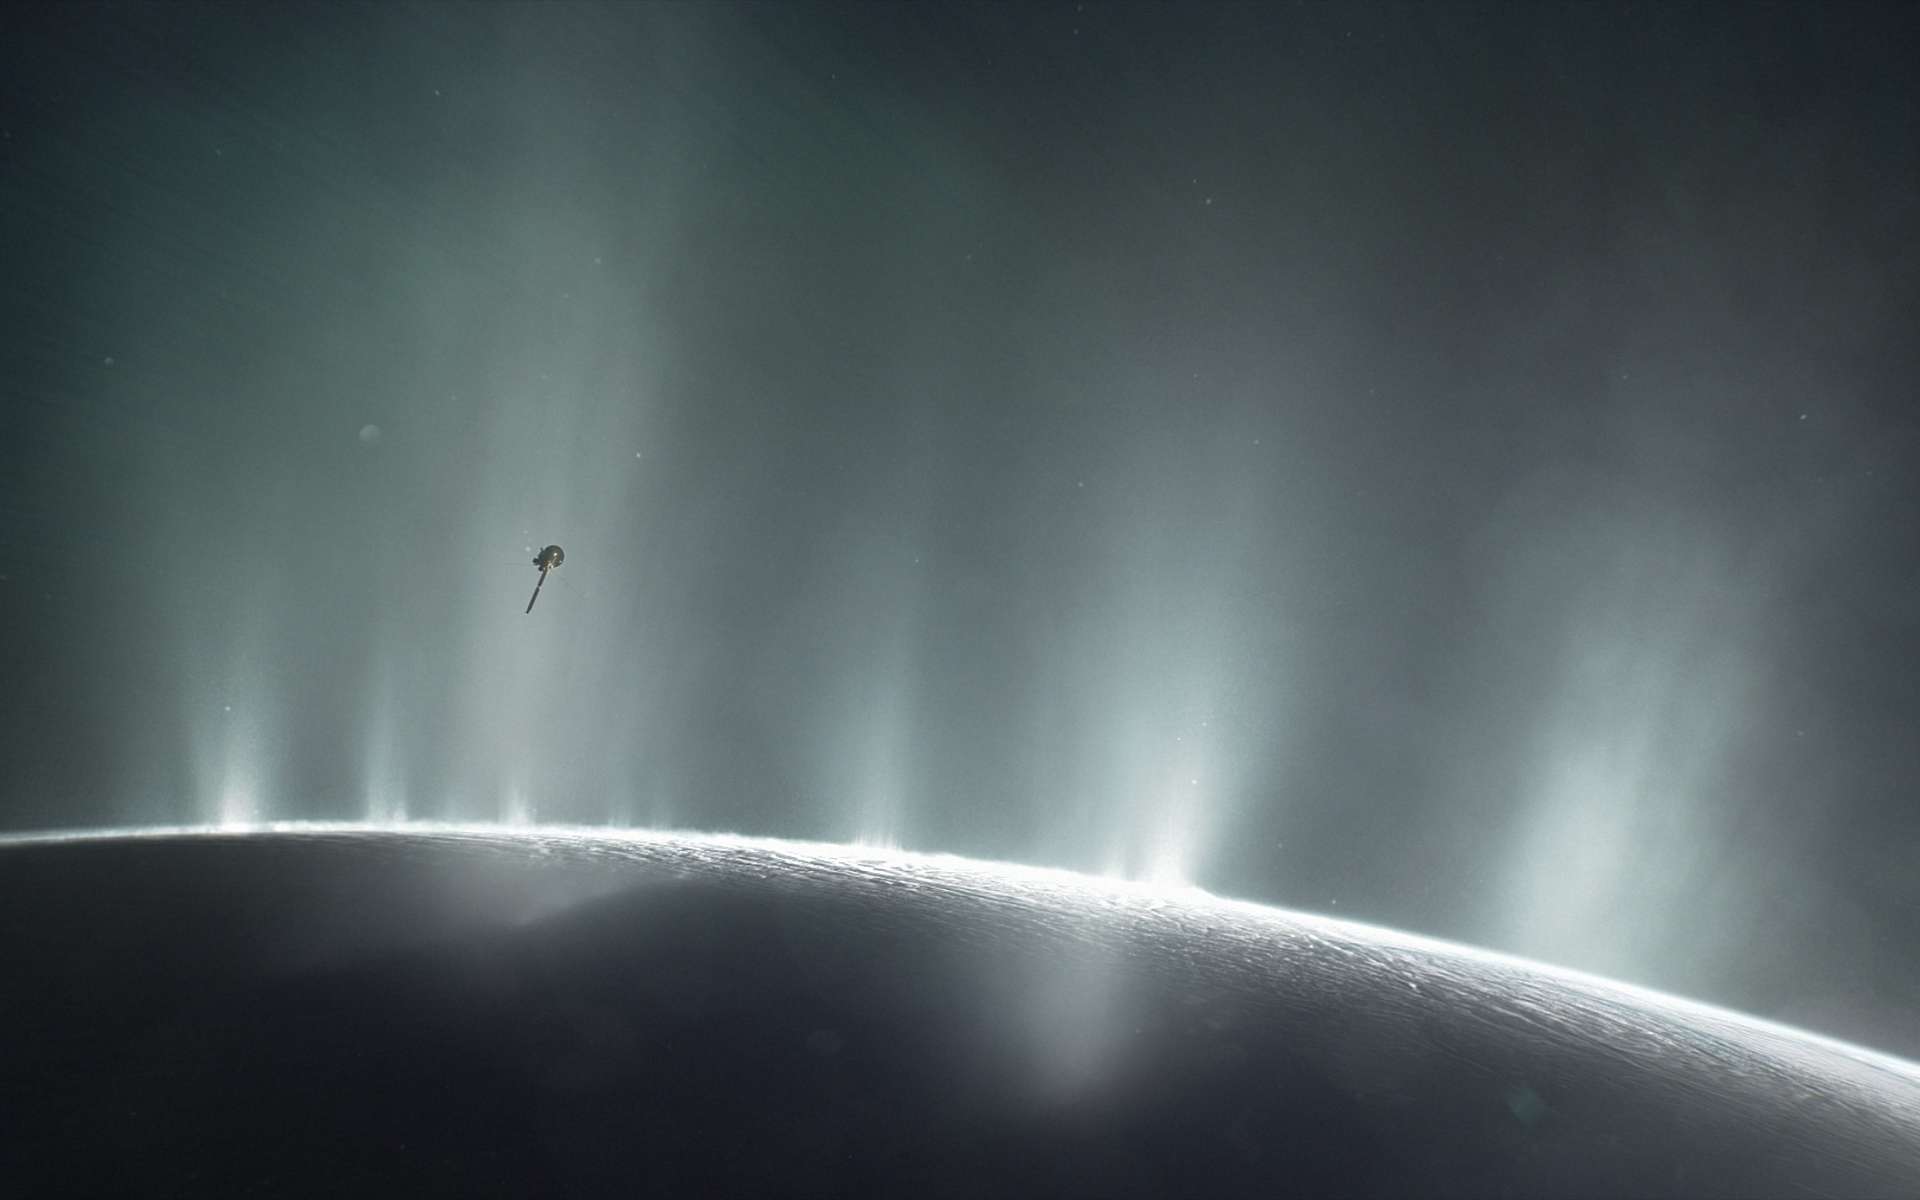 Une mission privée vers Encelade est à l'étude. Illustration de Cassini volant à travers les panaches du pôle sud d’Encelade. © Nasa, JPL-Caltech